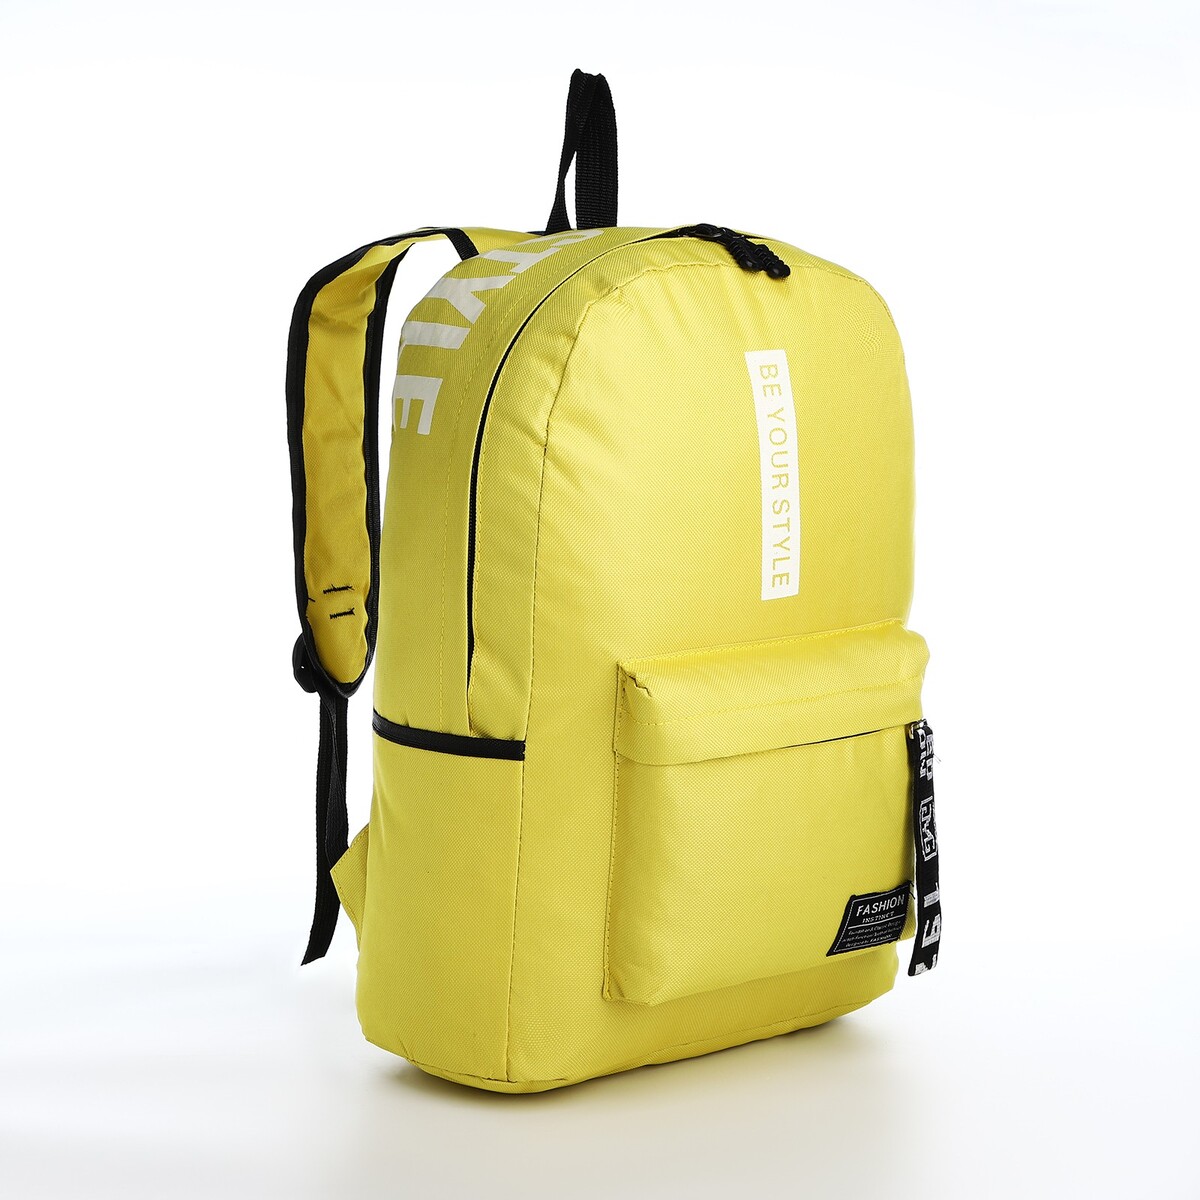 Рюкзак на молнии, наружный карман, 2 боковых кармана, цвет желтый рюкзак hike pack 27 желтый